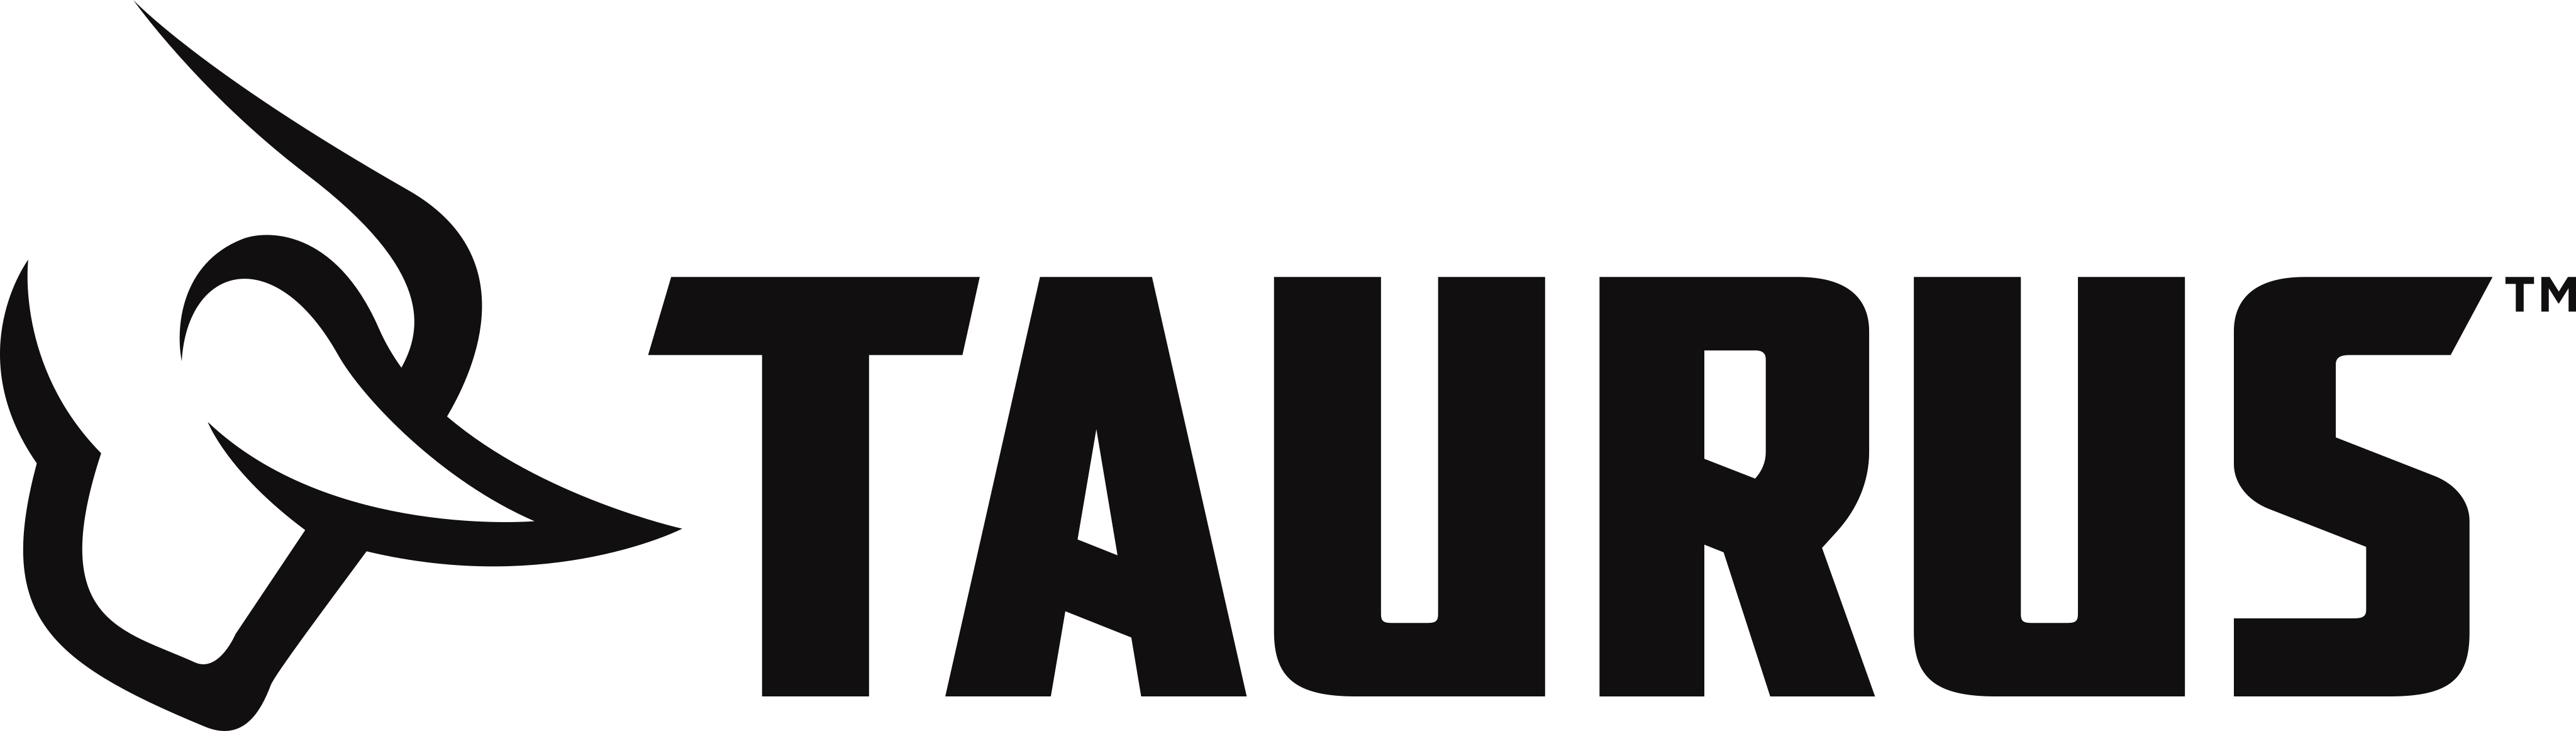 taurus logo 2 - Taurus Armas Logo